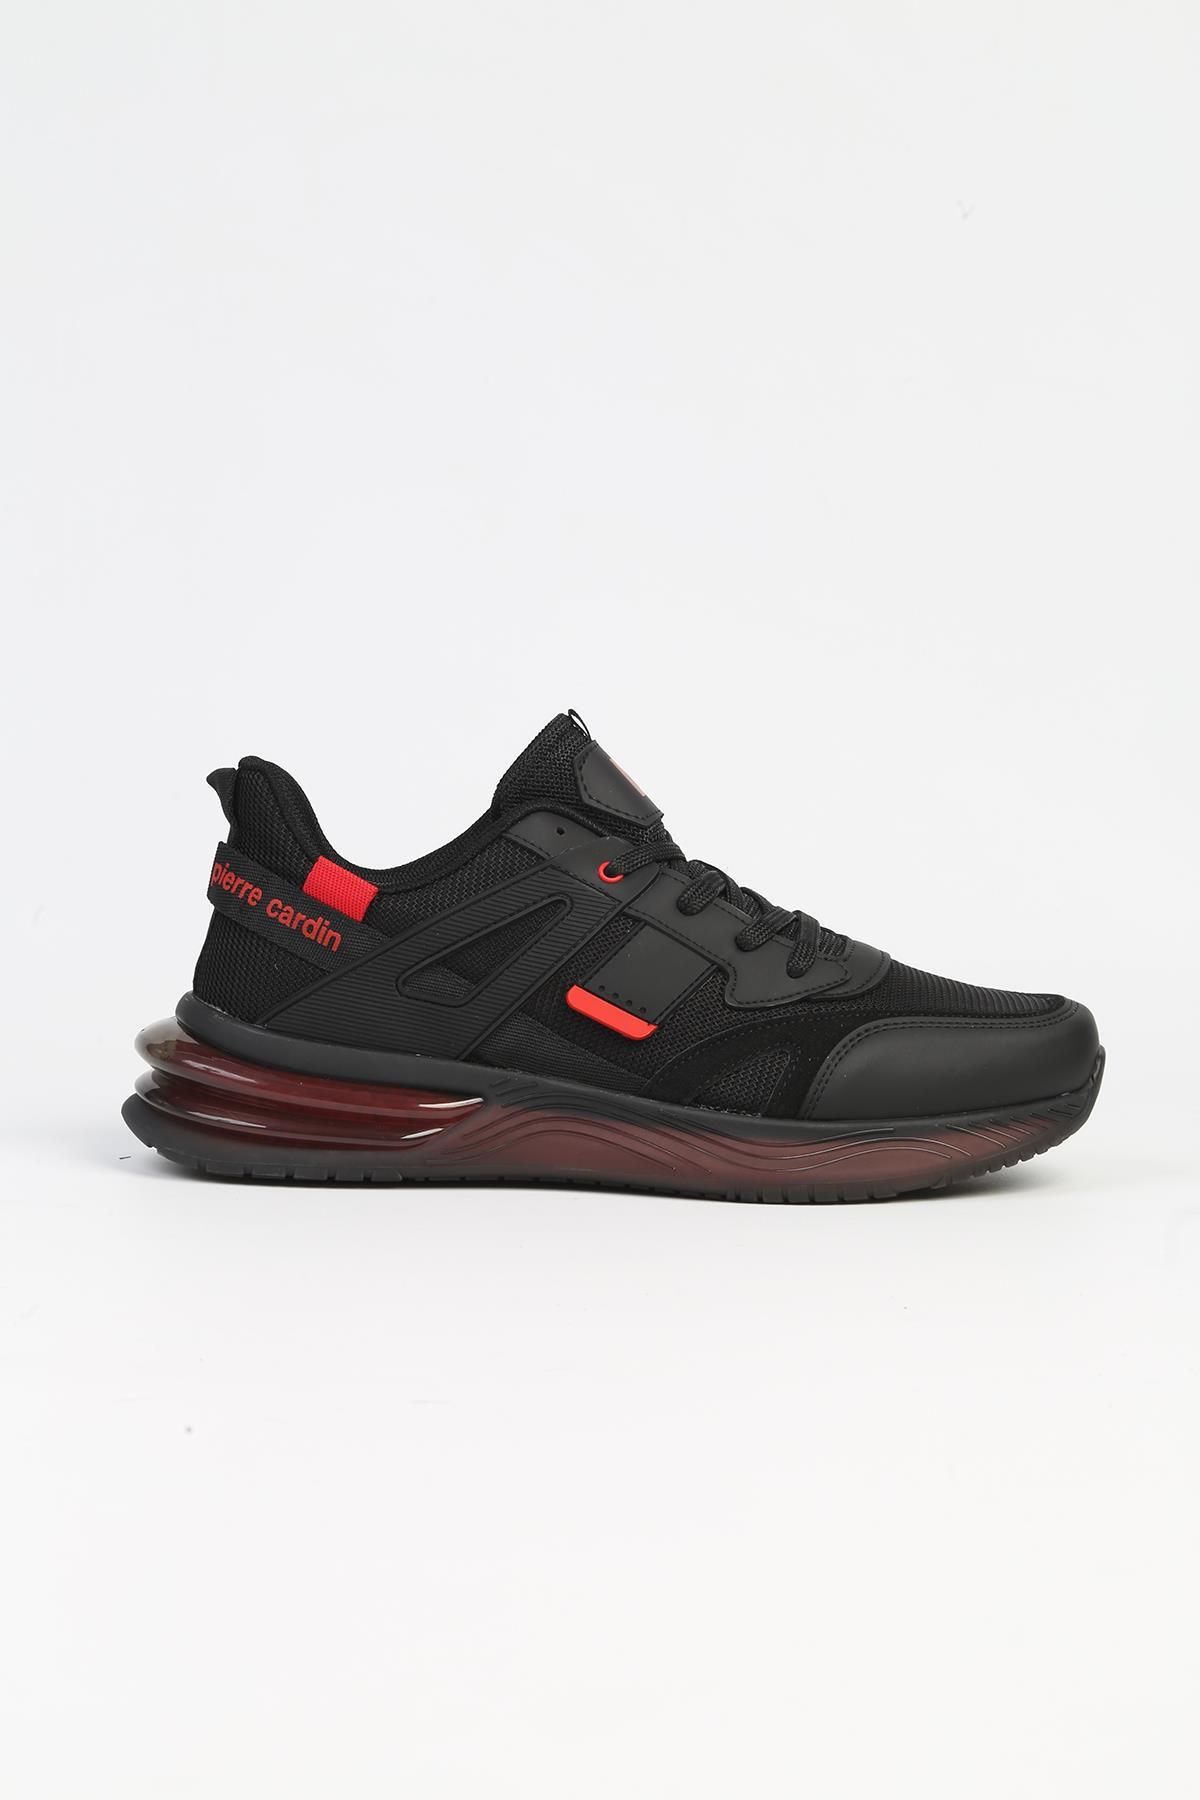 Pierre Cardin ® | PC-31412 - 34152 Siyah Kırmızı - Erkek Spor Ayakkabı